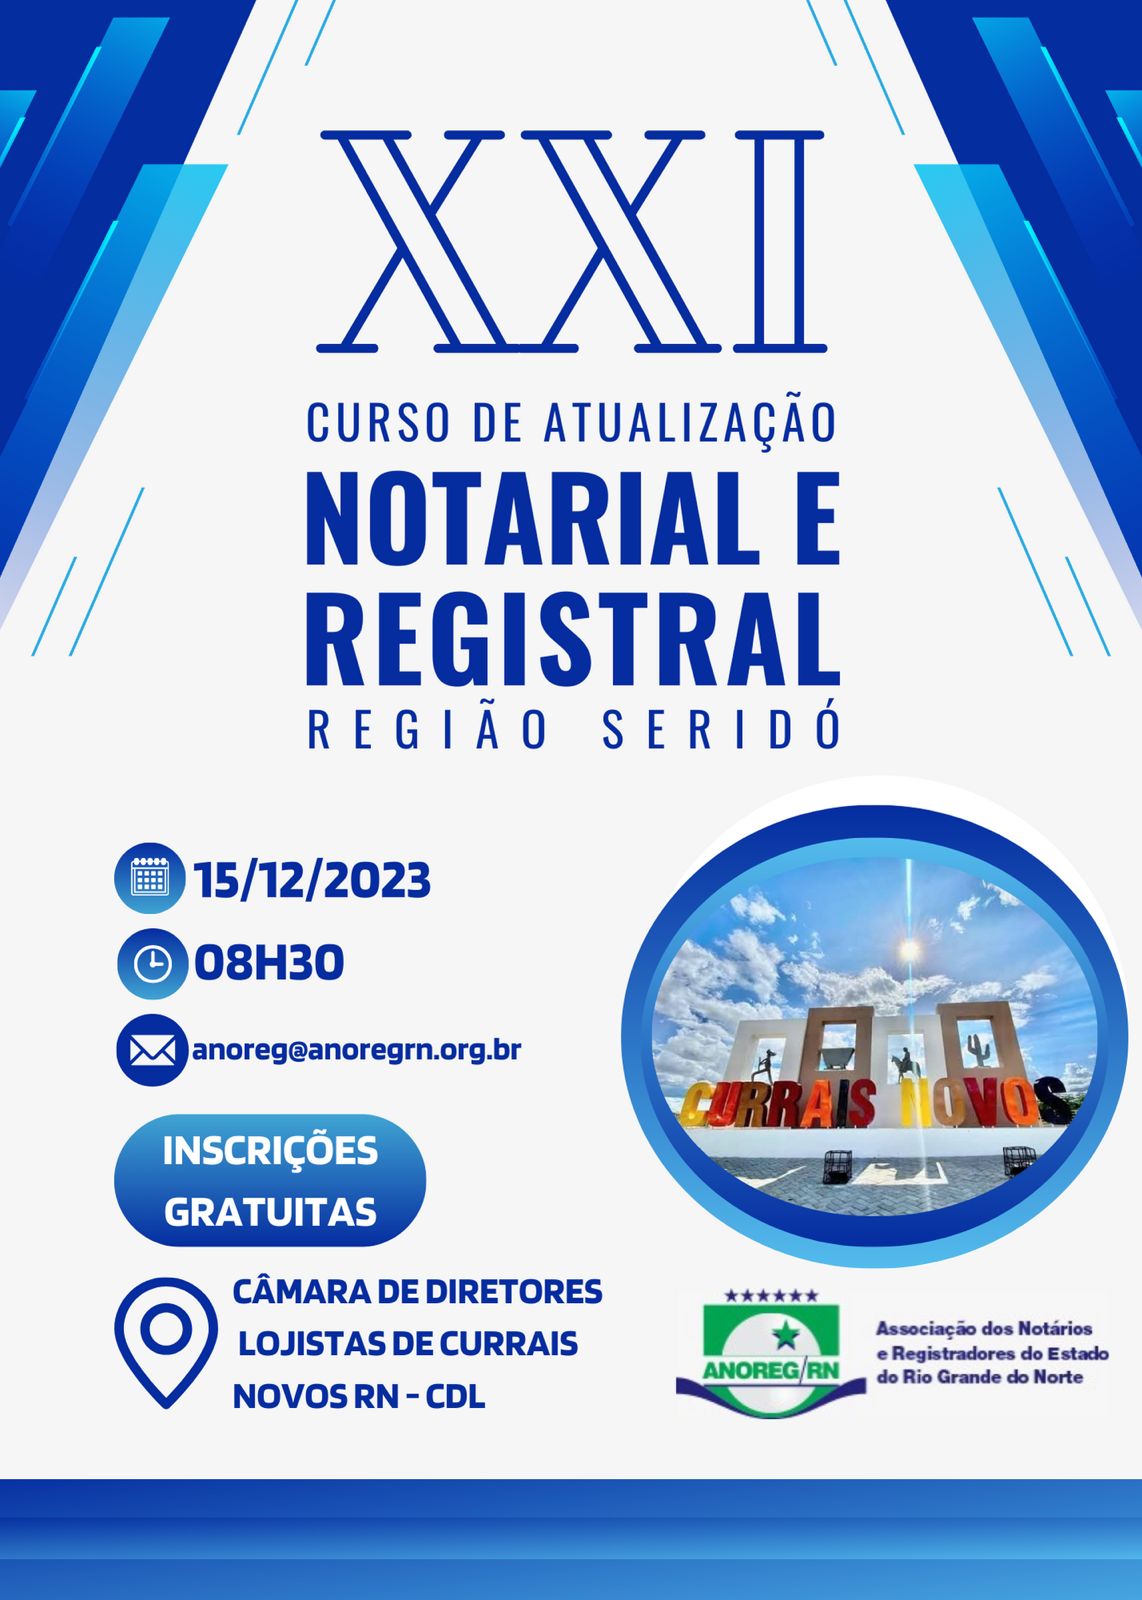 XXI Curso de Atualização Notarial e Registral - Dia 15/12 - Currais Novos/RN